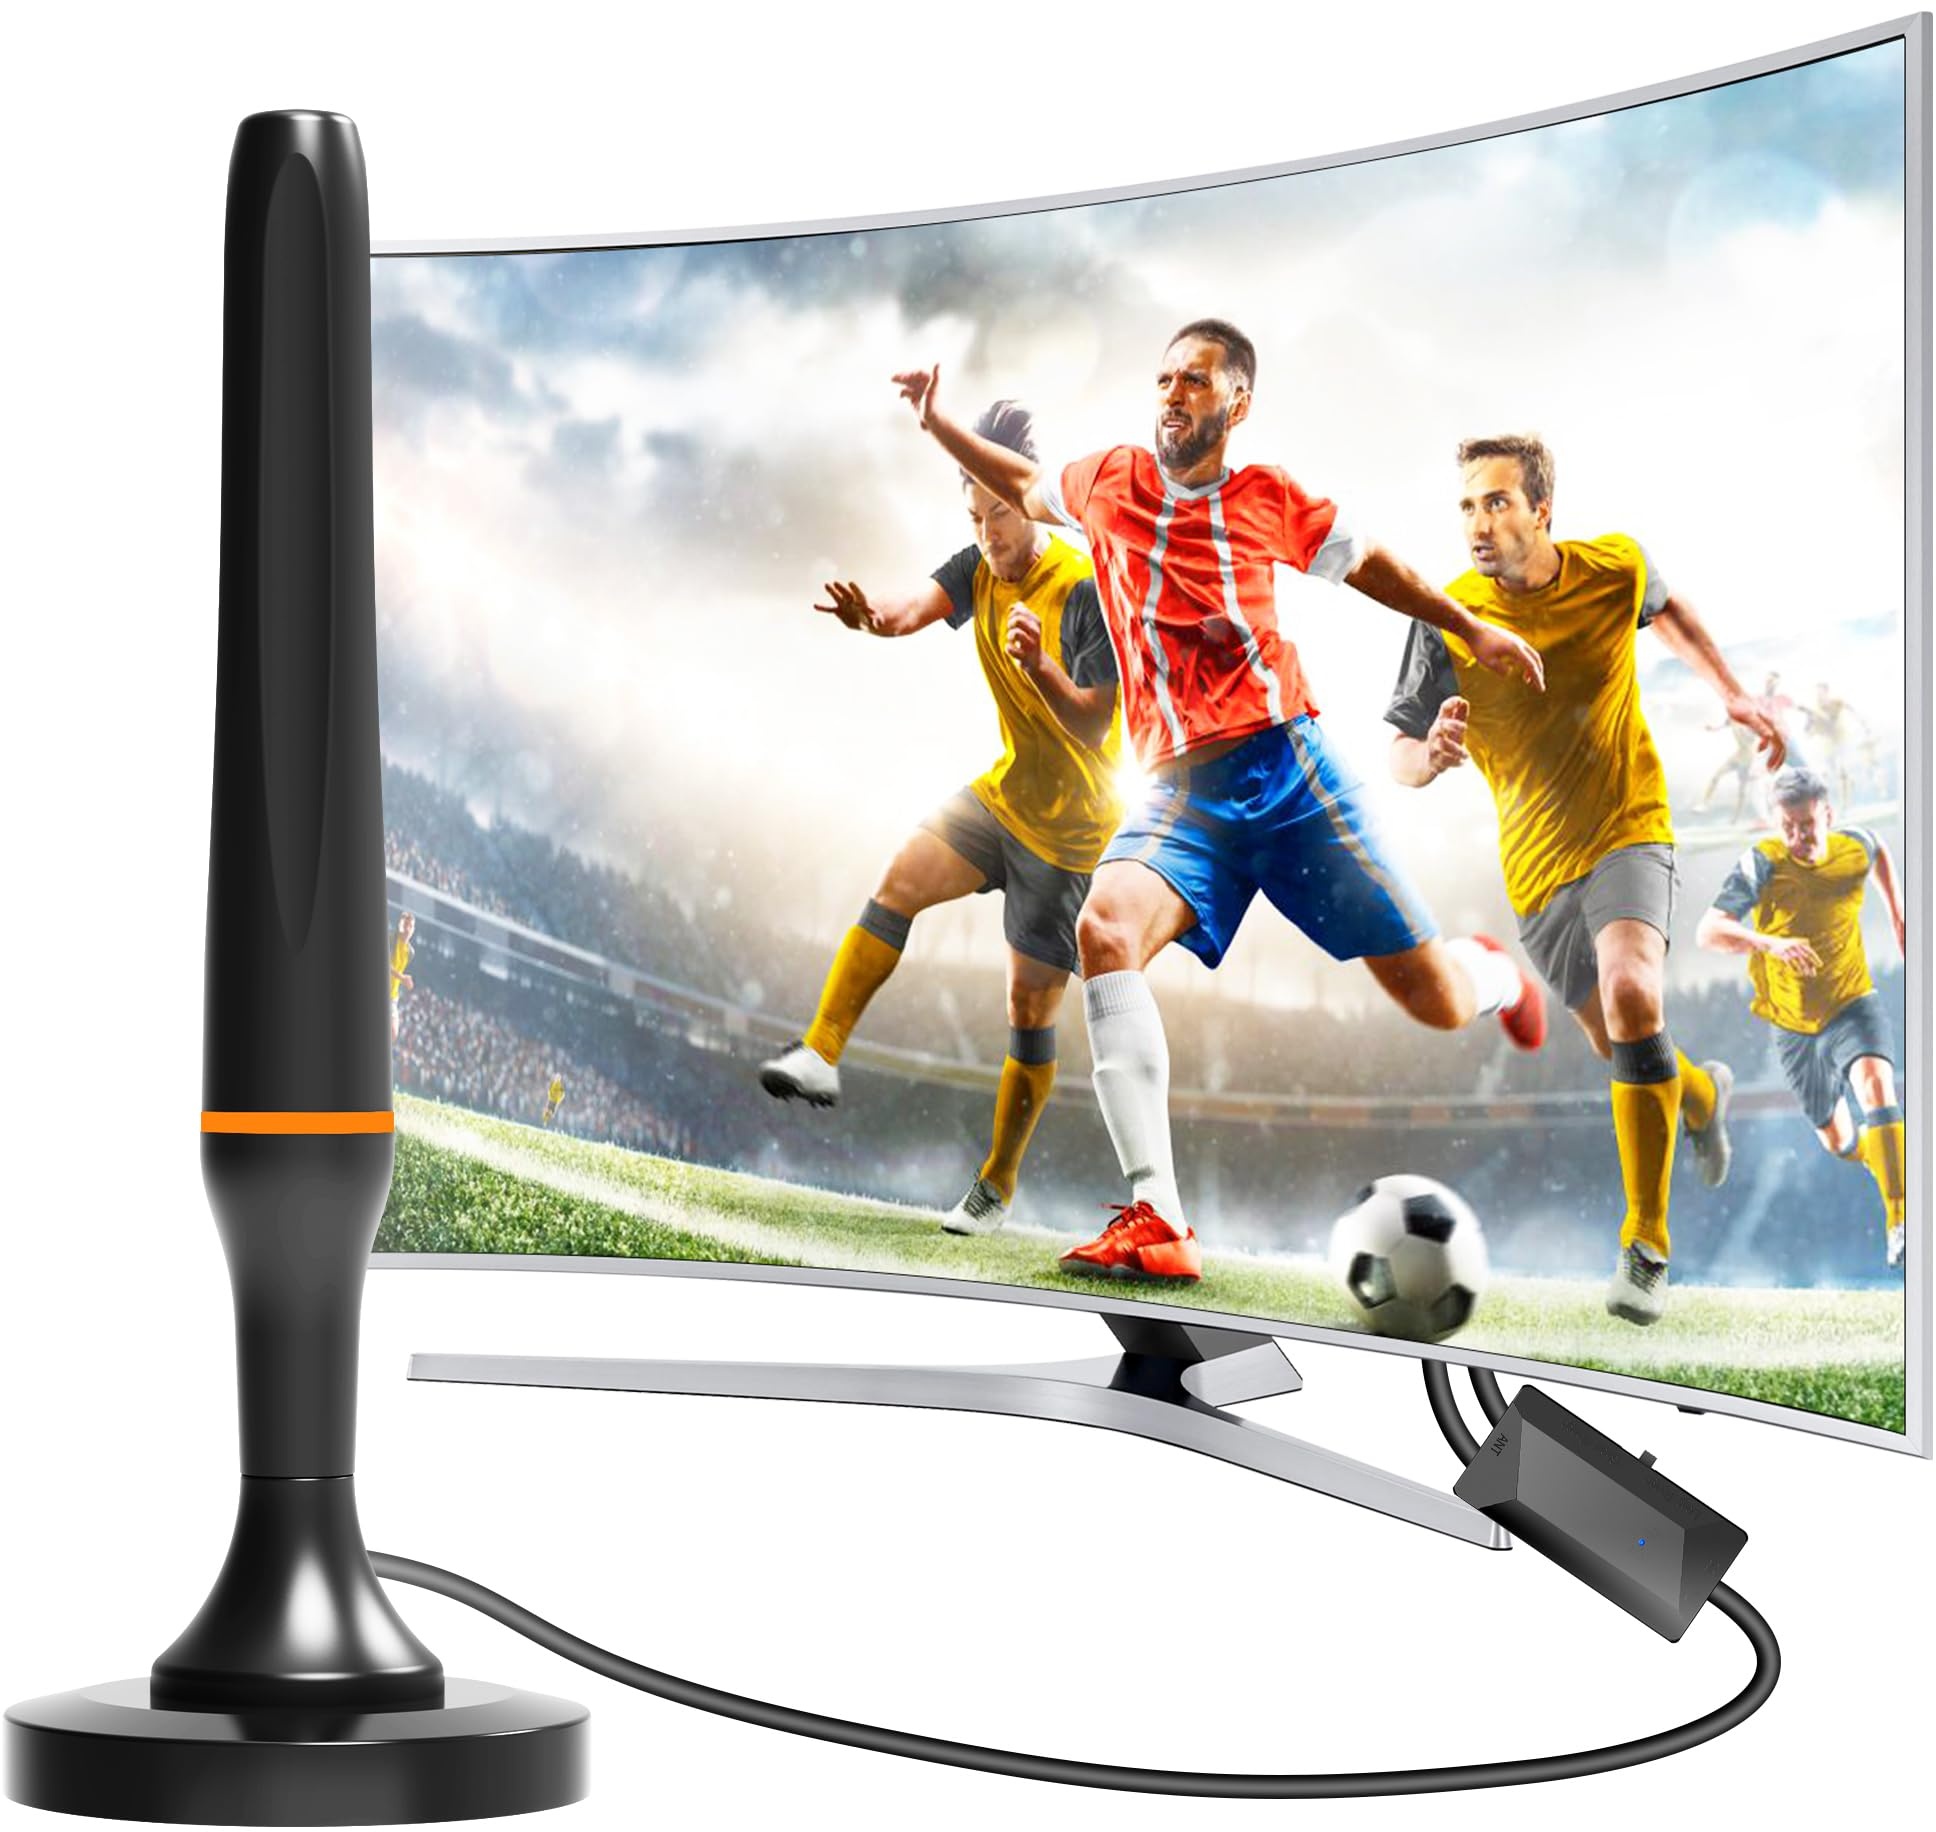 DVBT2 Antenne - Digitale Zimmerantenne für Fernseher - DVBT2 Antenne mit Verstärker Innen mit Verstärker Innen 360 Grad Empfang - Mit Magnetfuß - 2.5 Meter Kabel, unterstützt 4K HD-Kanäle, Smart TV